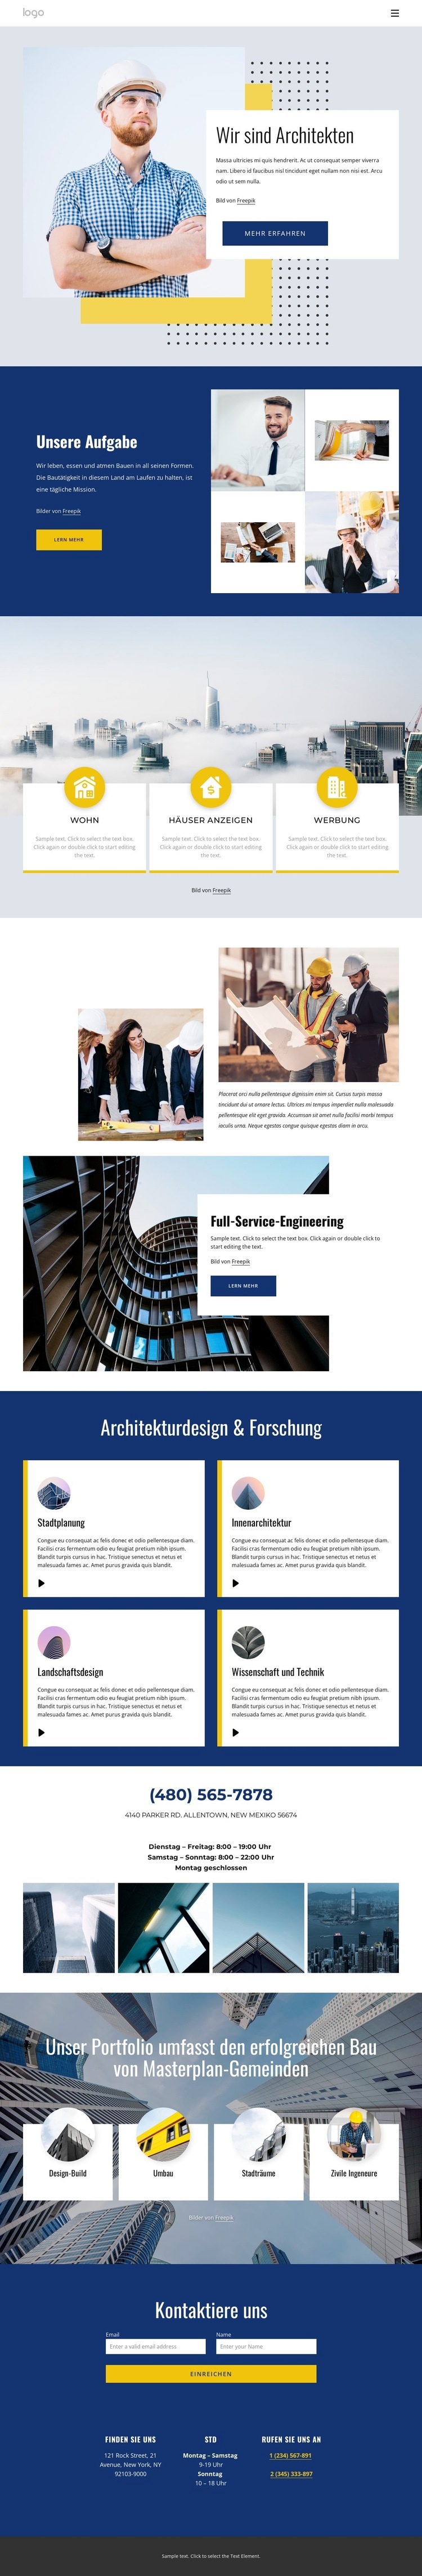 Architekturprojekte Website design